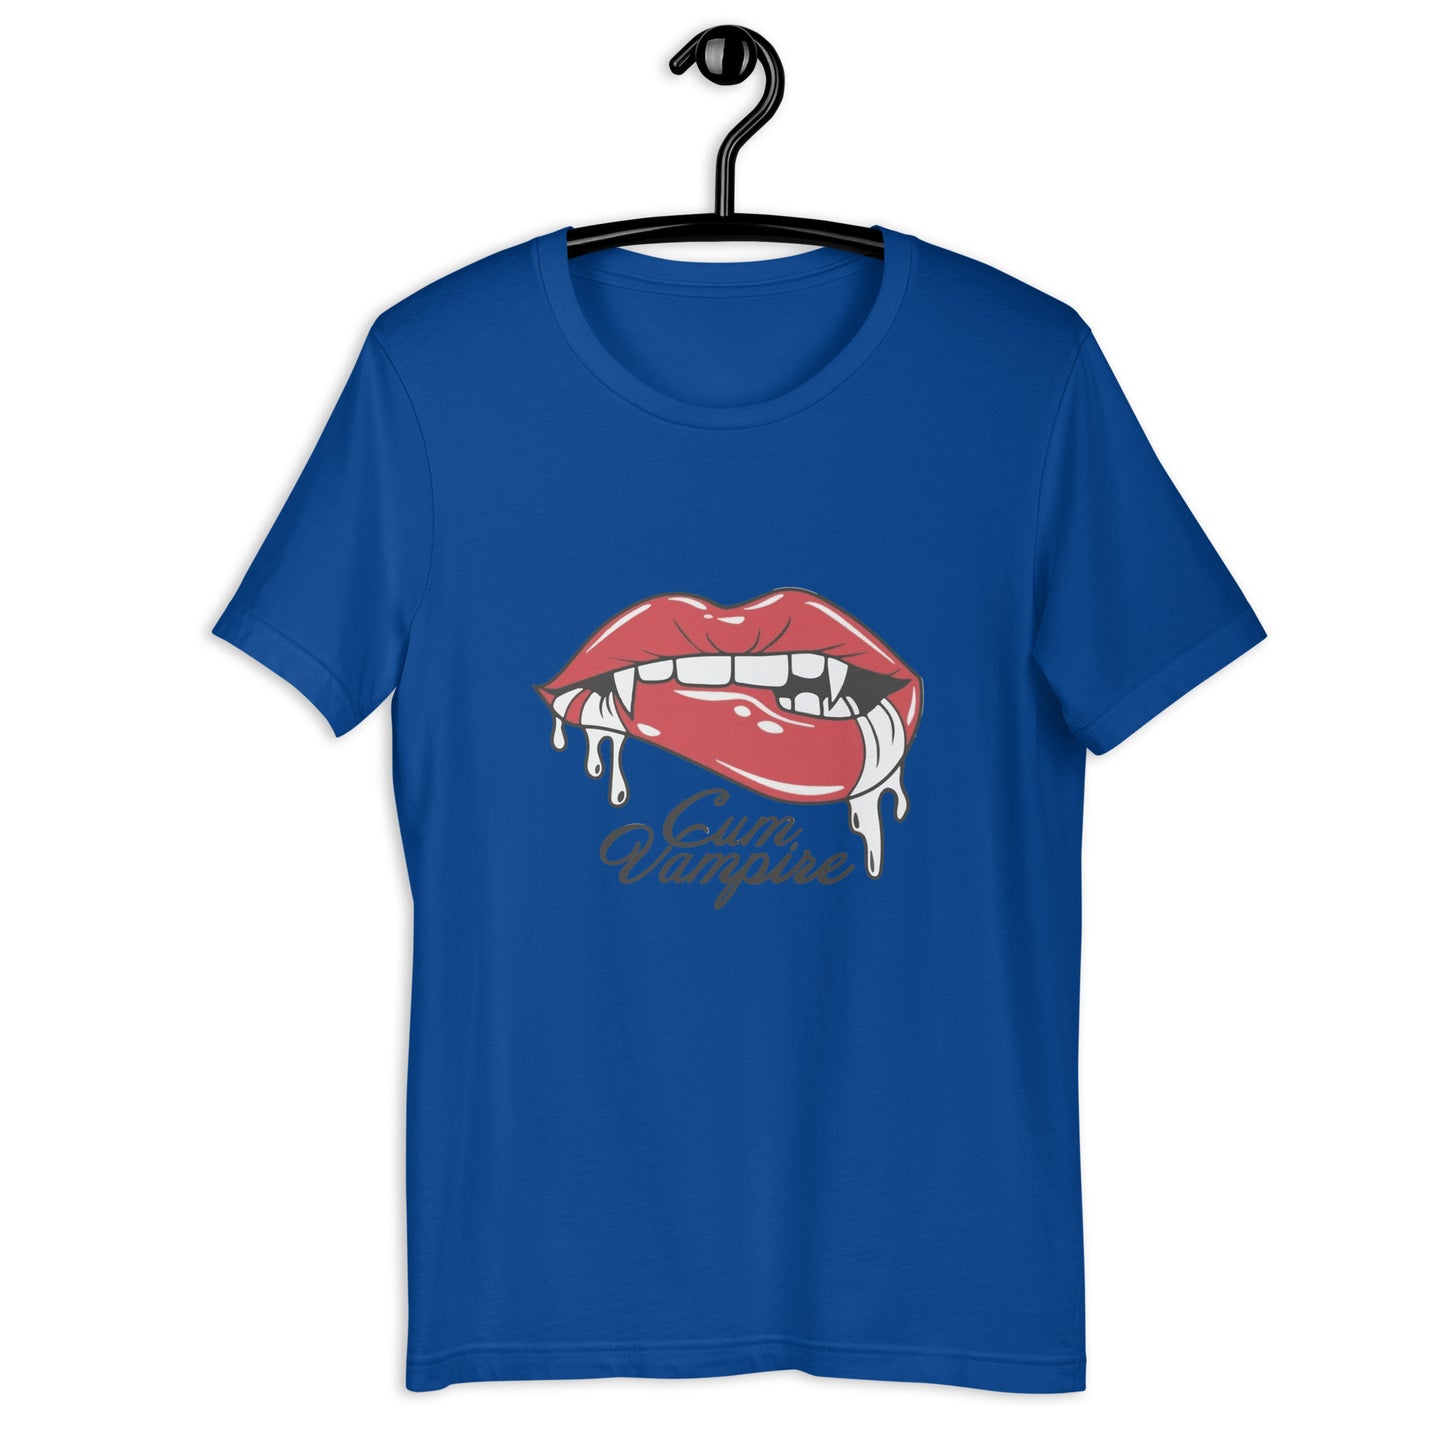 Camiseta unisex Vampiro semen